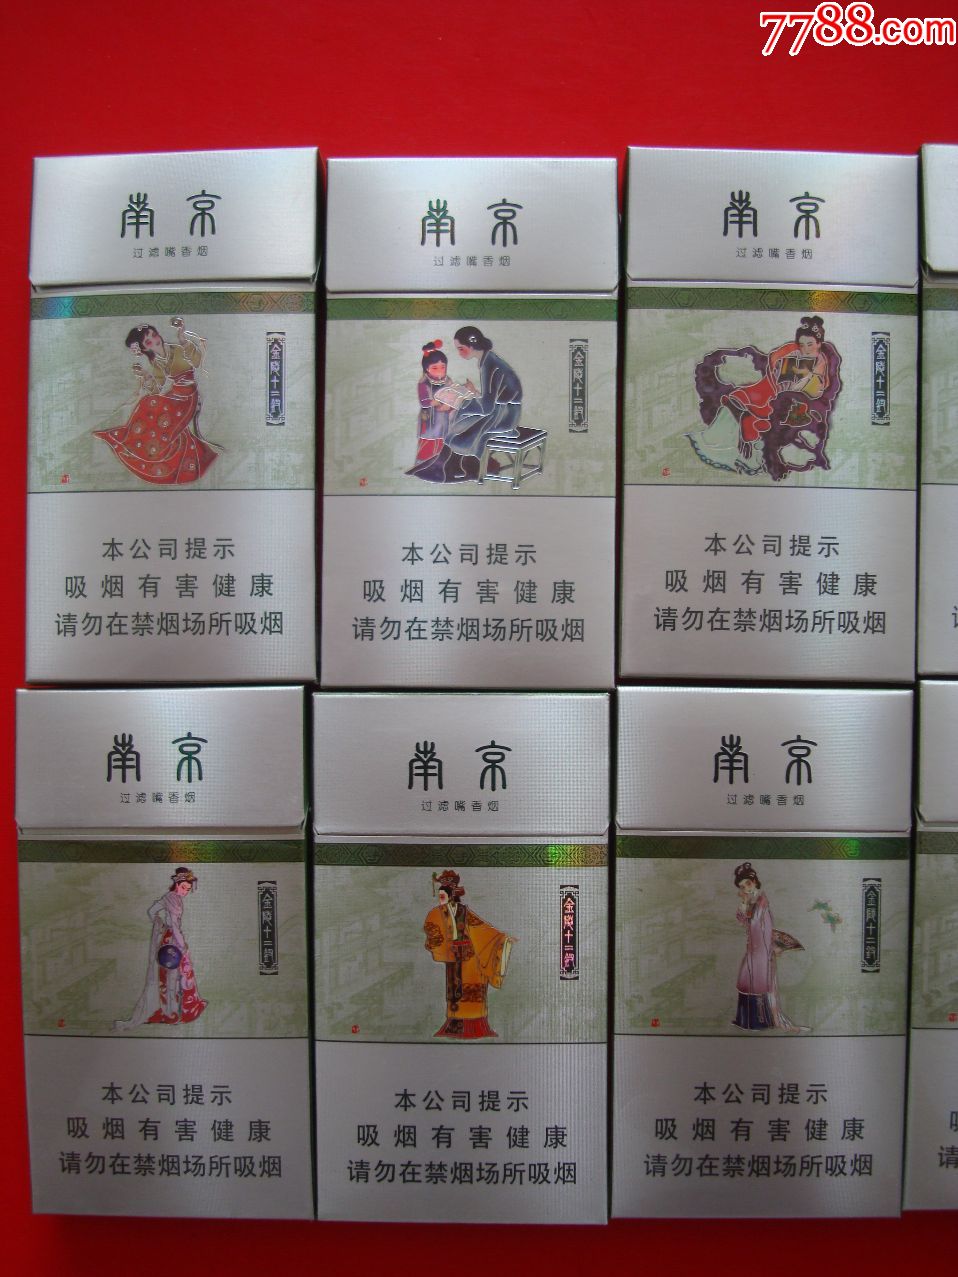 南京――金陵十二钗(银钗11枚)――本公司提示【劝阻版】